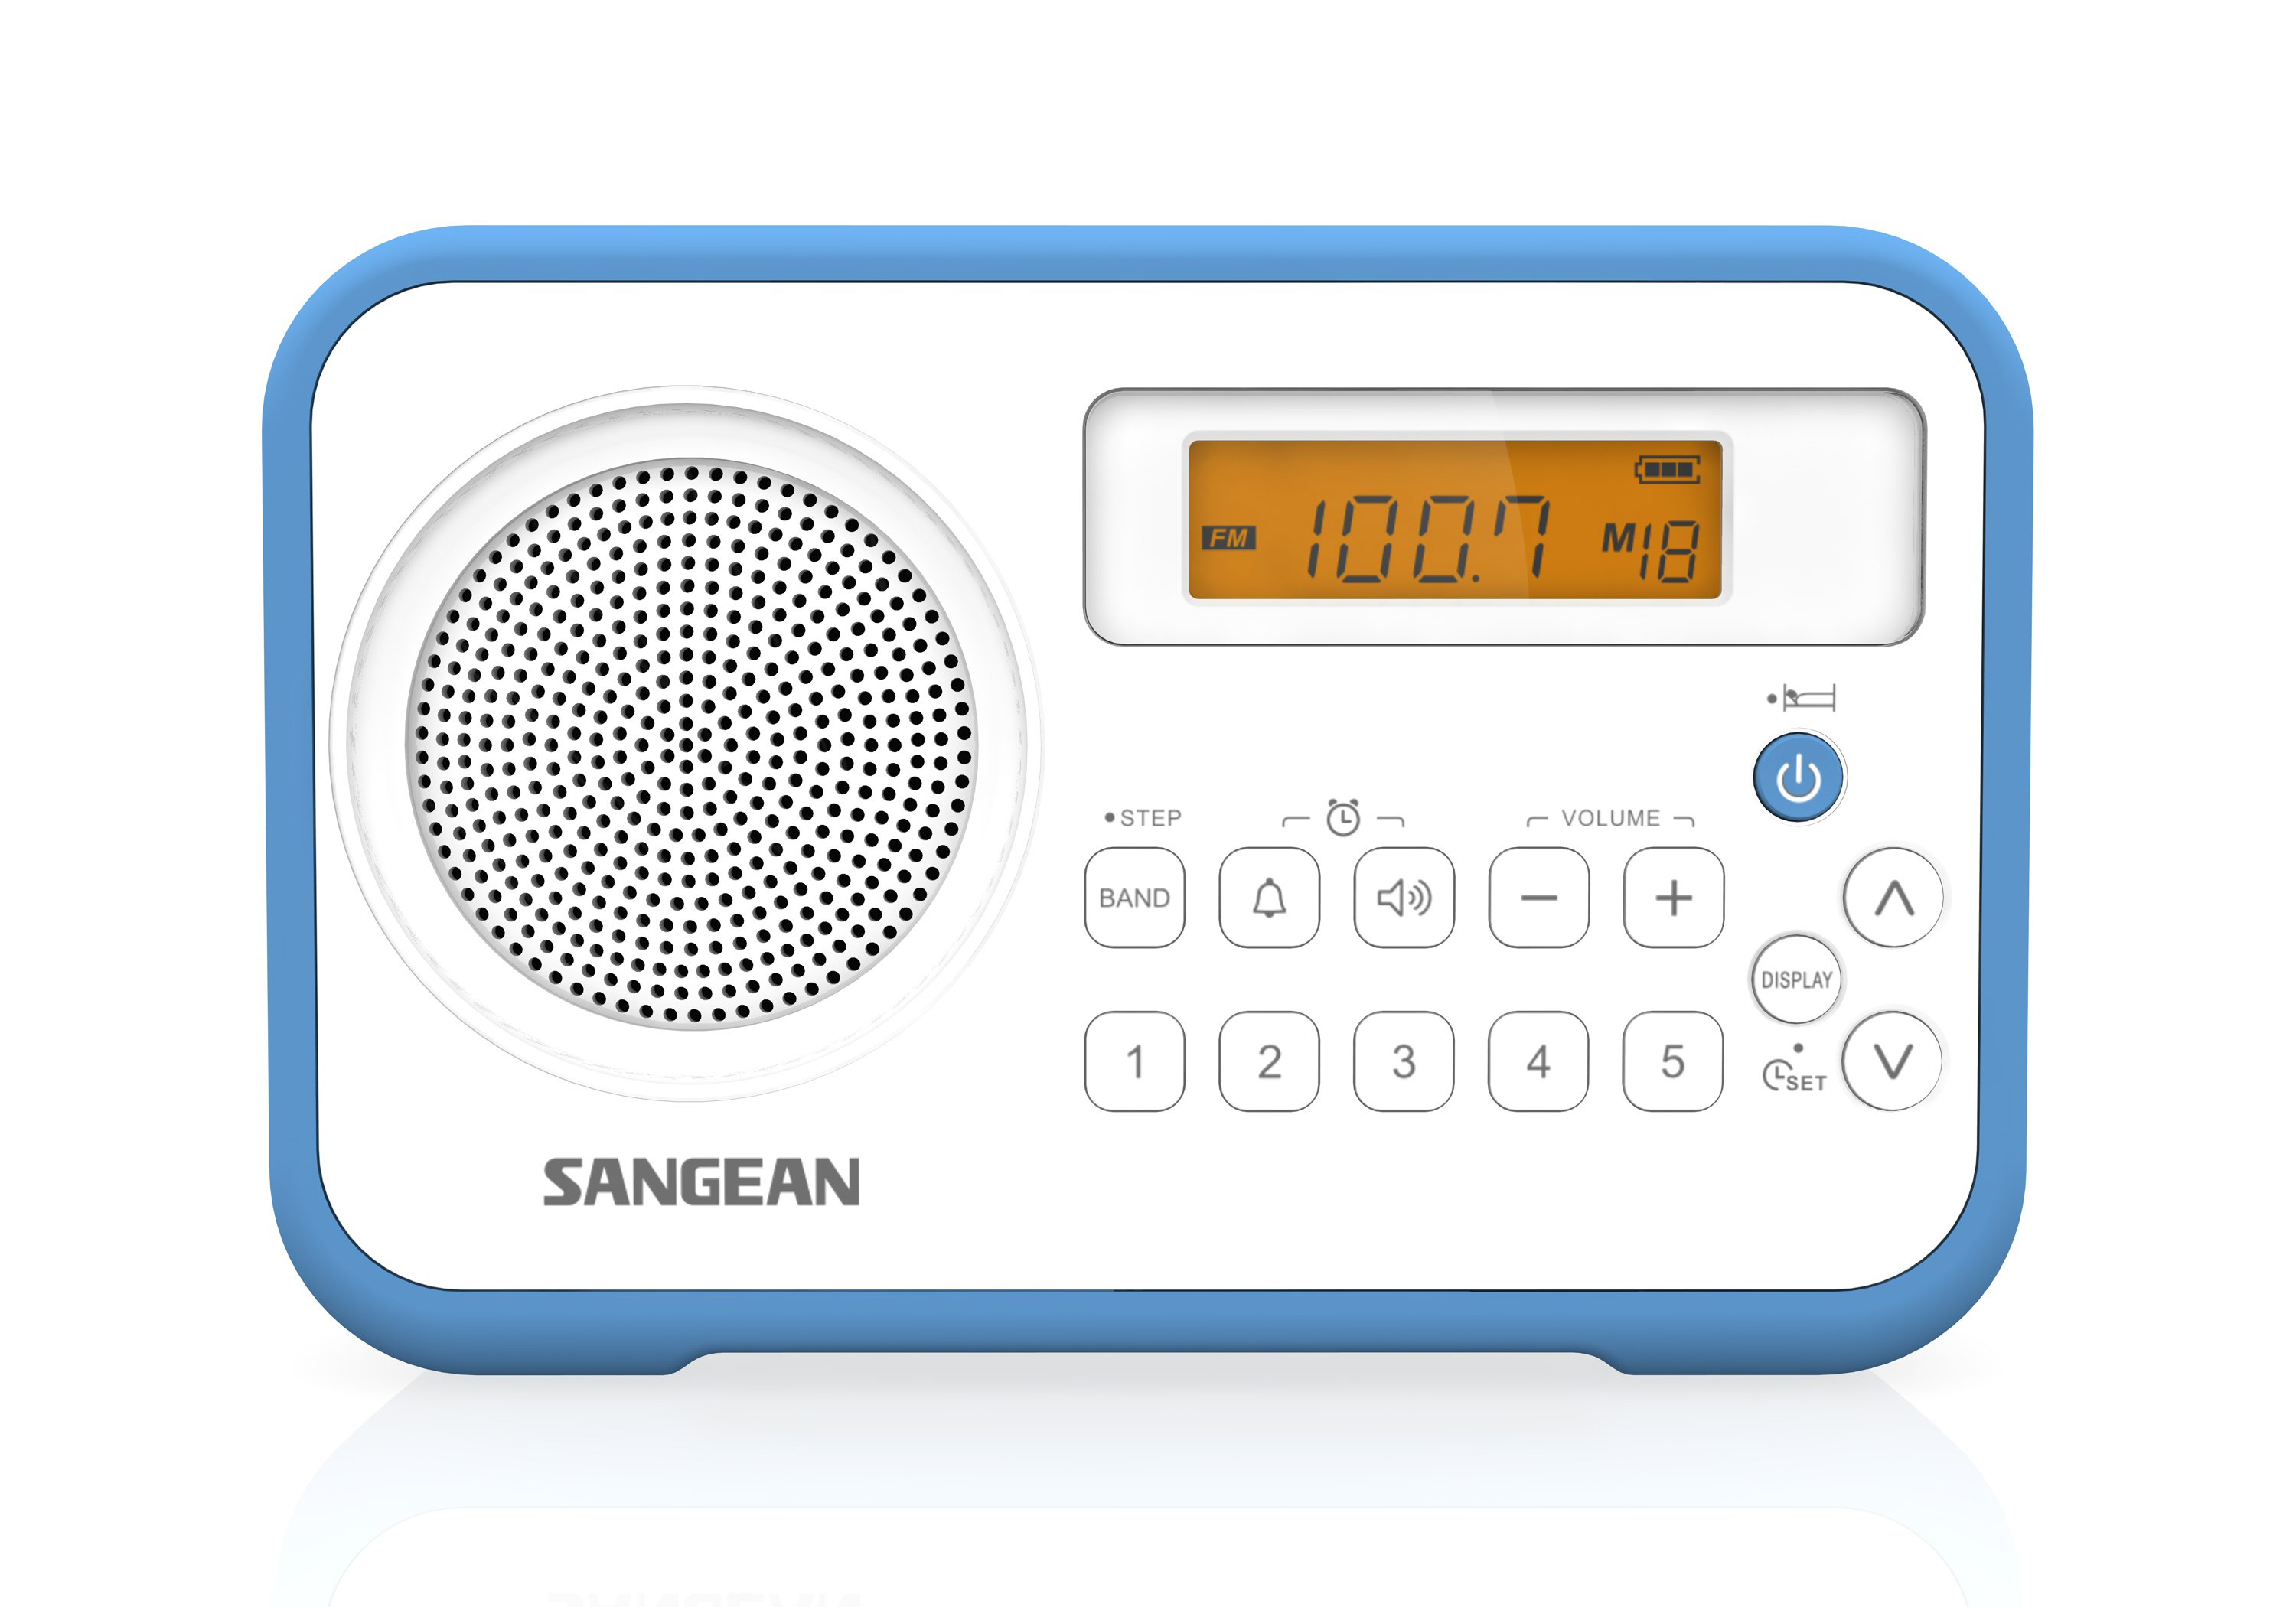 PR-D18, draagbare AM/FM radio, wit/blauw